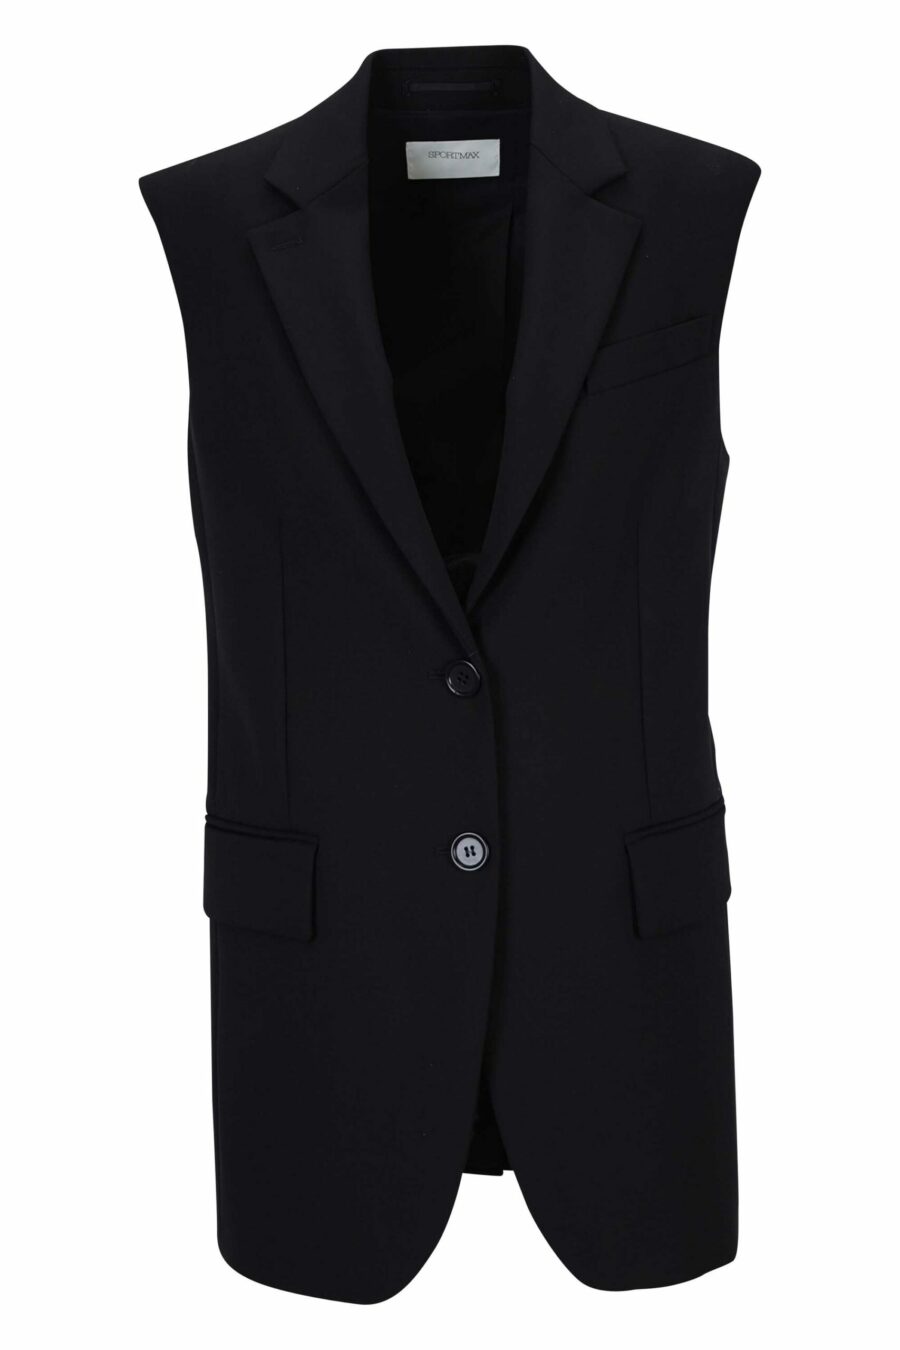 Black blazer style waistcoat - 22810141060034 scaled